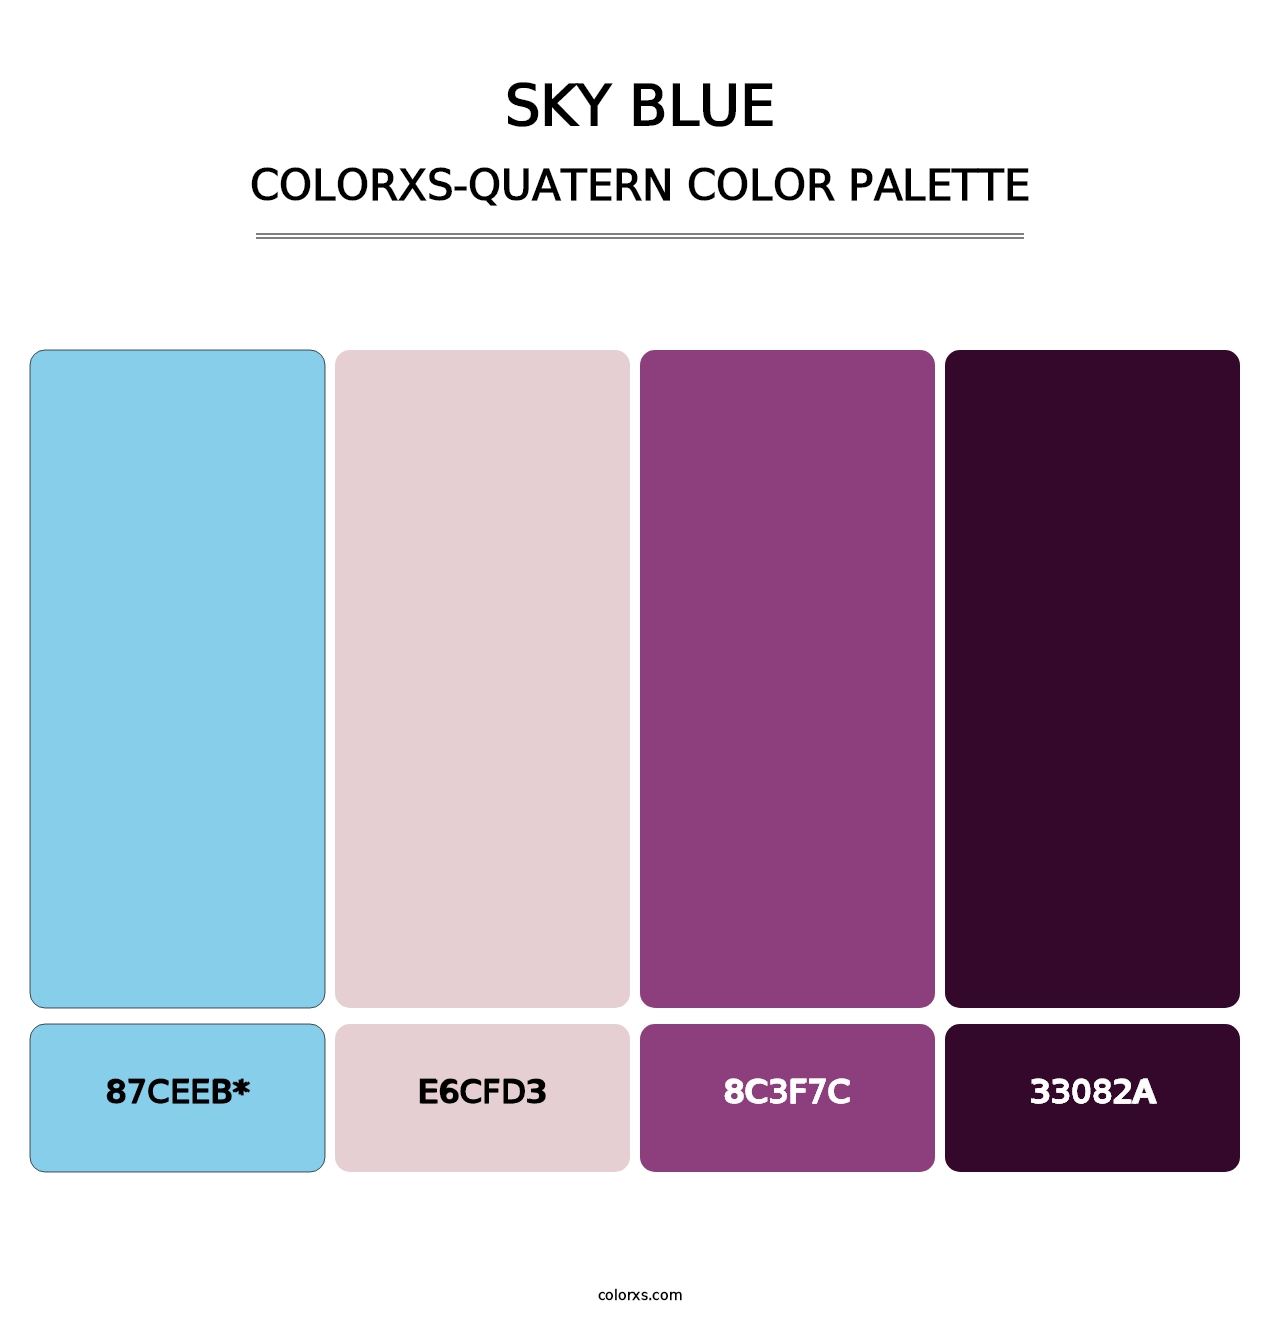 Sky blue - Colorxs Quatern Palette